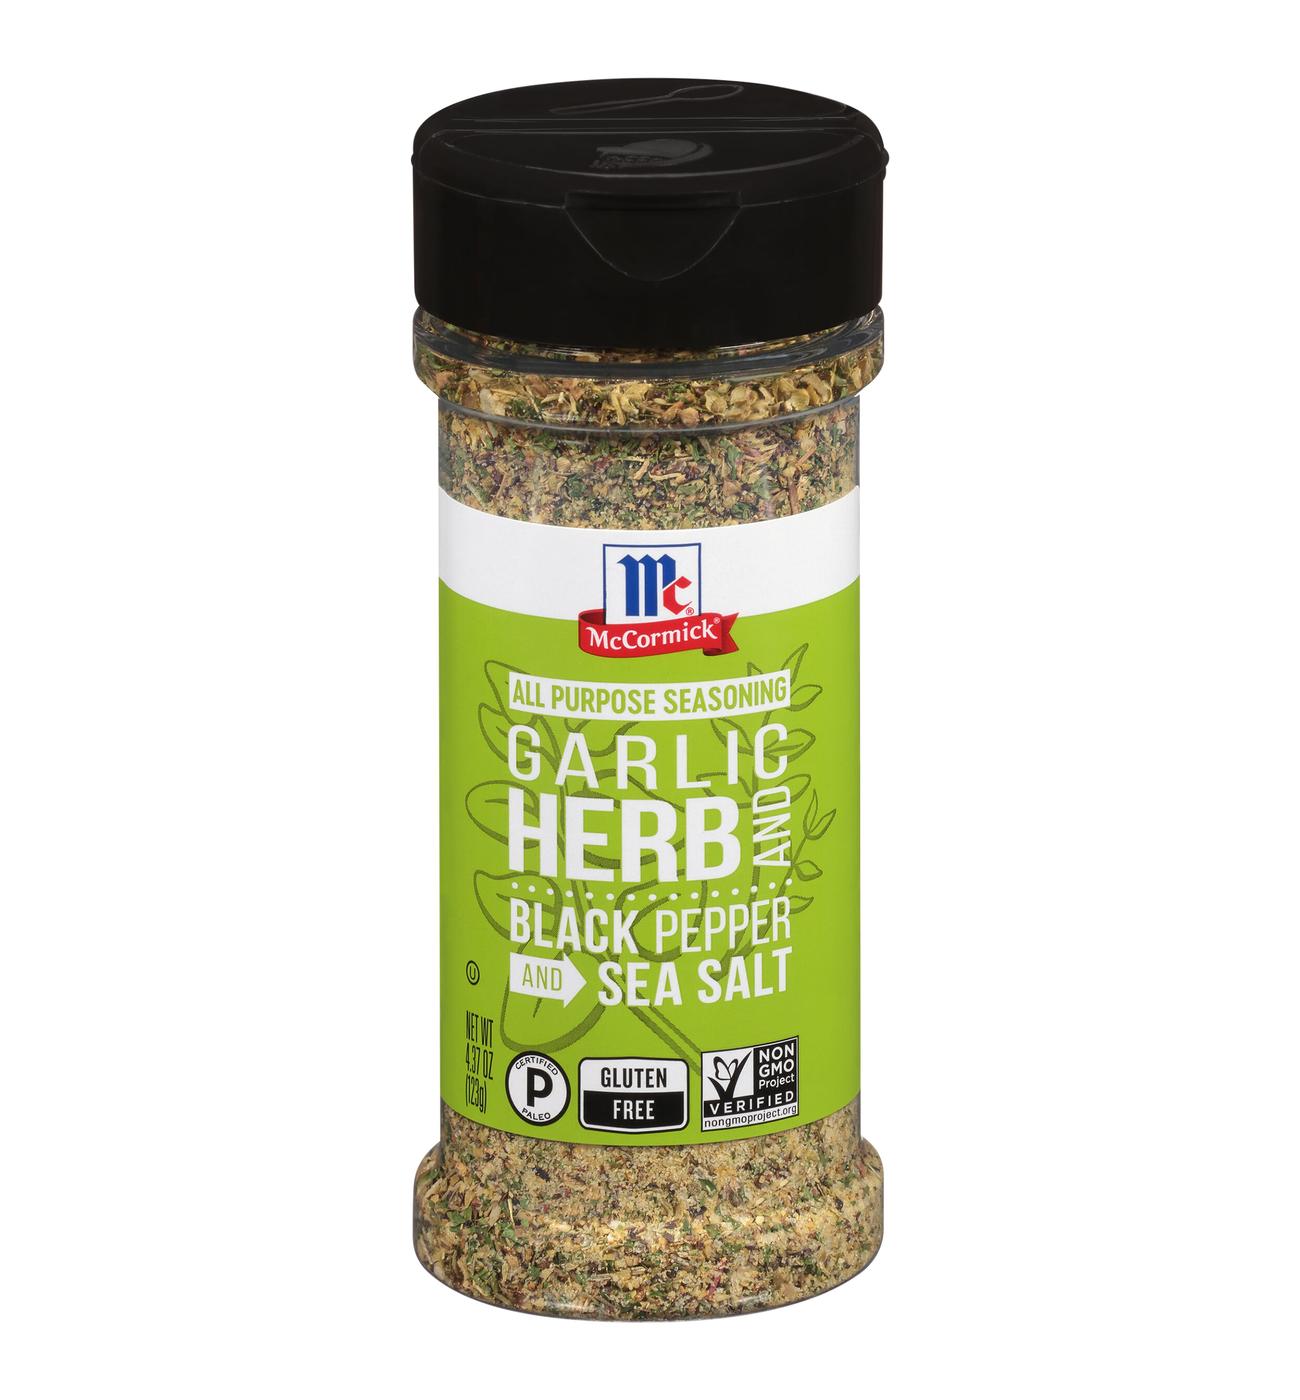 Garlic Herb Seasoning Mix